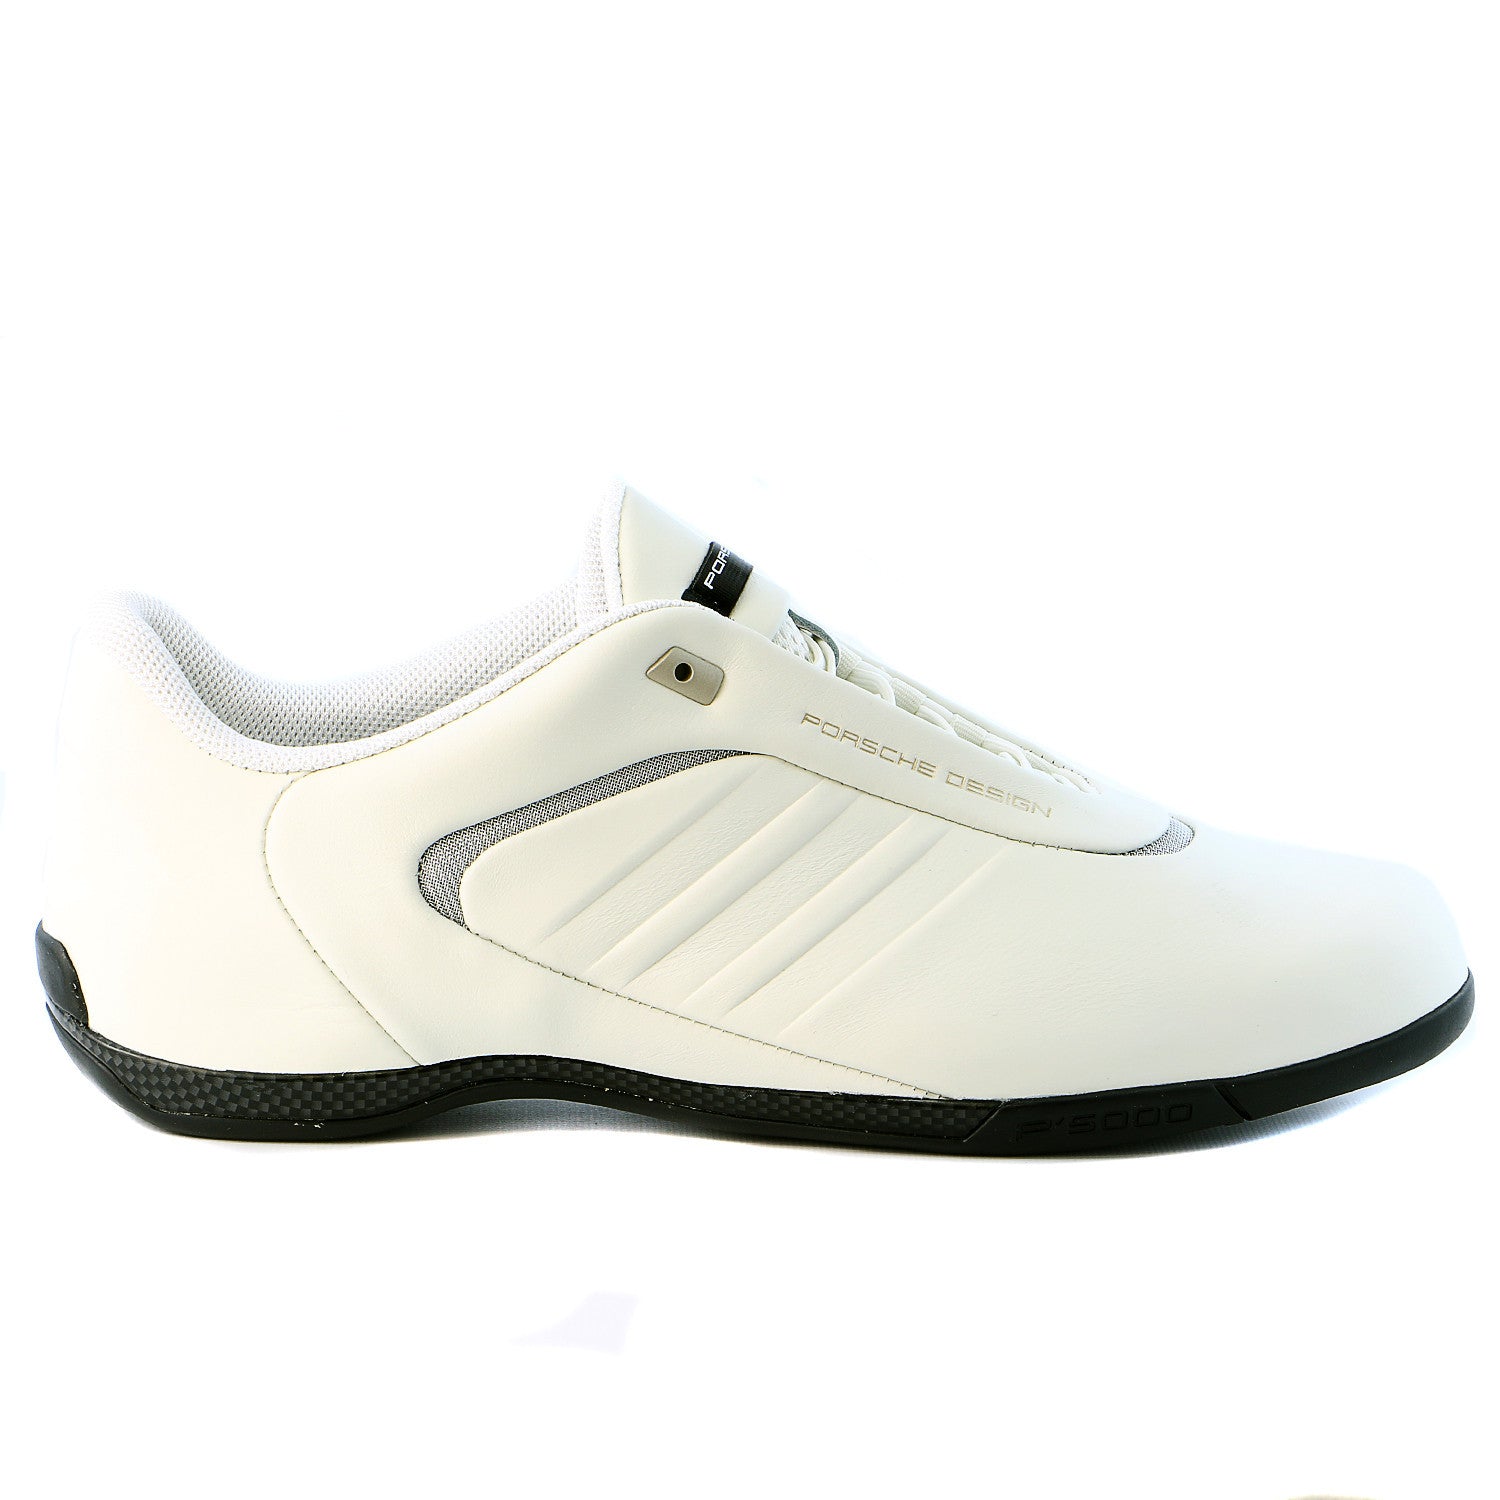 Flojamente Palmadita rescate Porsche Design Athletic III Leather Sneaker Shoe - White VaPour/White -  Shoplifestyle